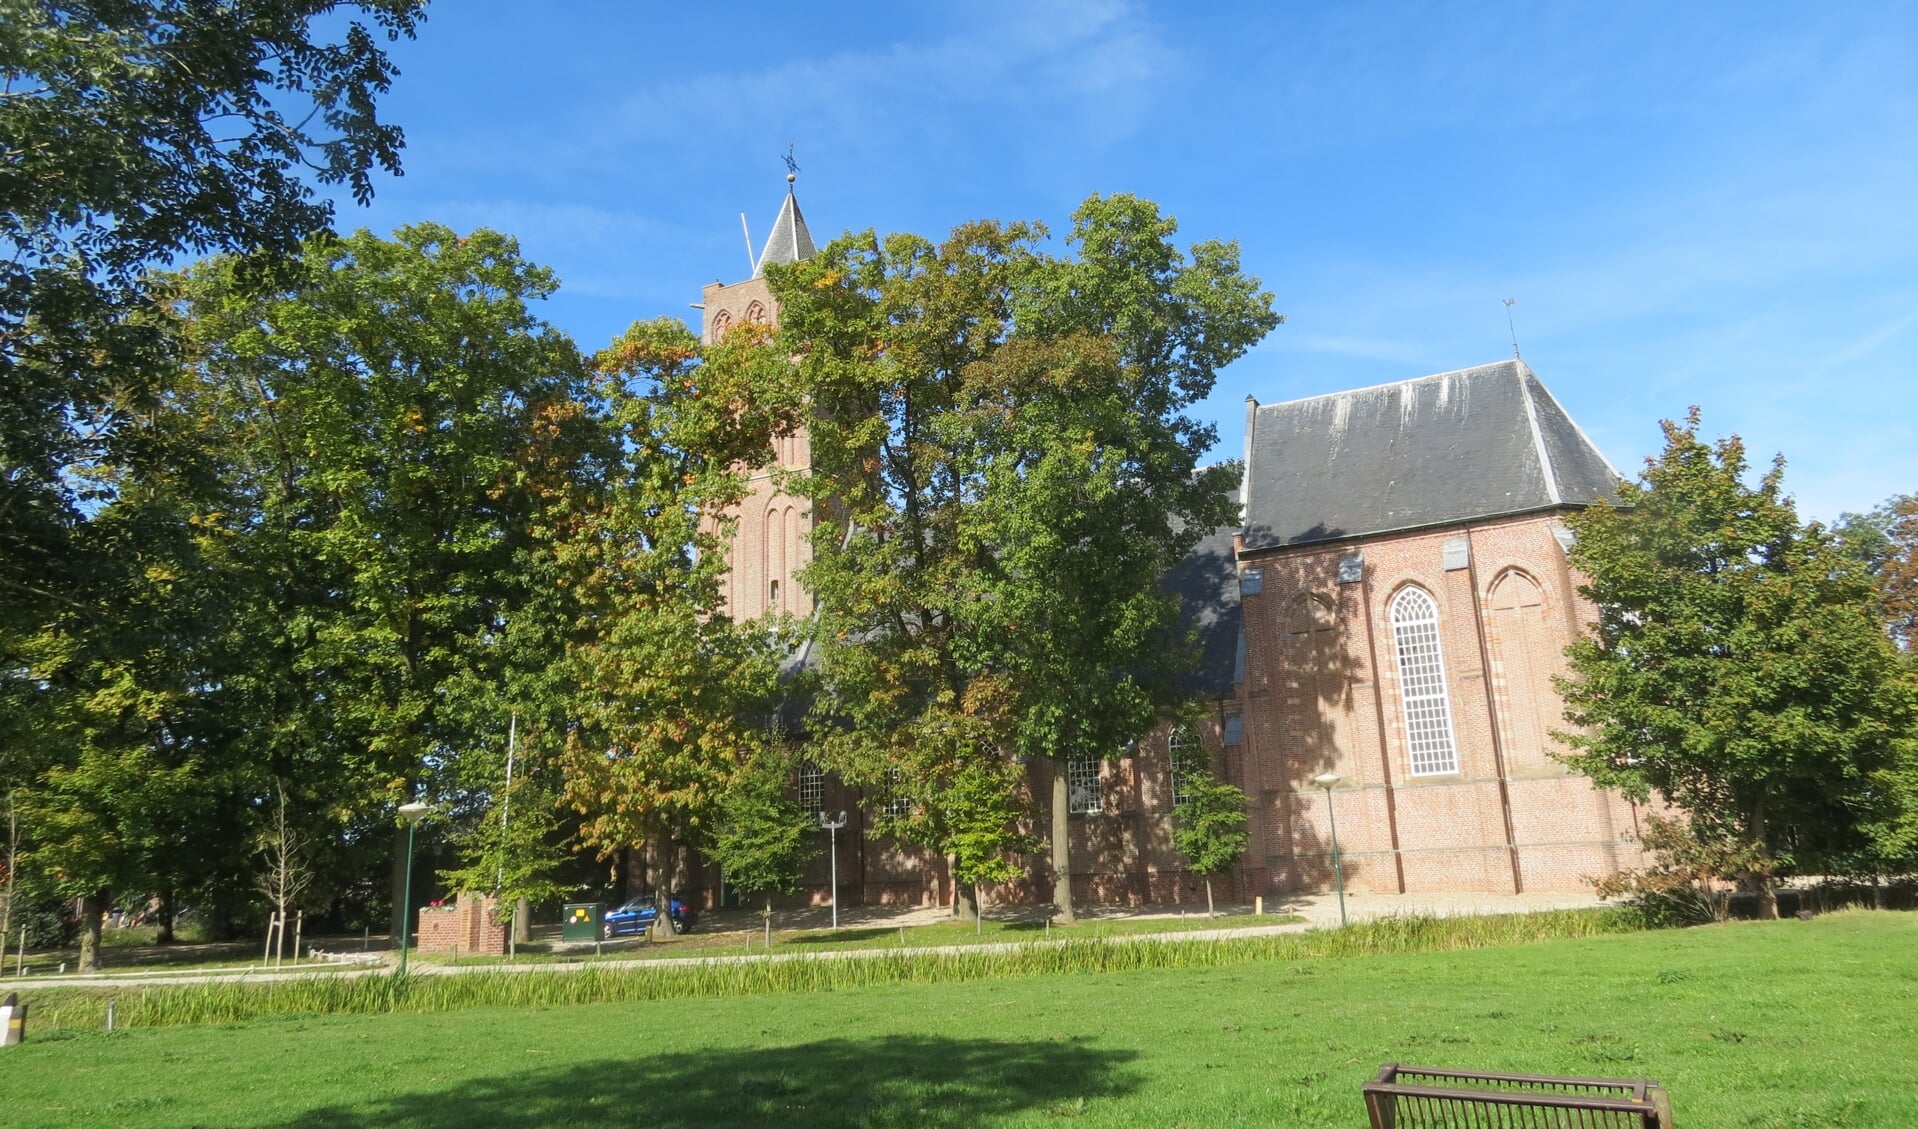   Het symposium vindt plaats in de Hervormde Kerk van Westbroek. 